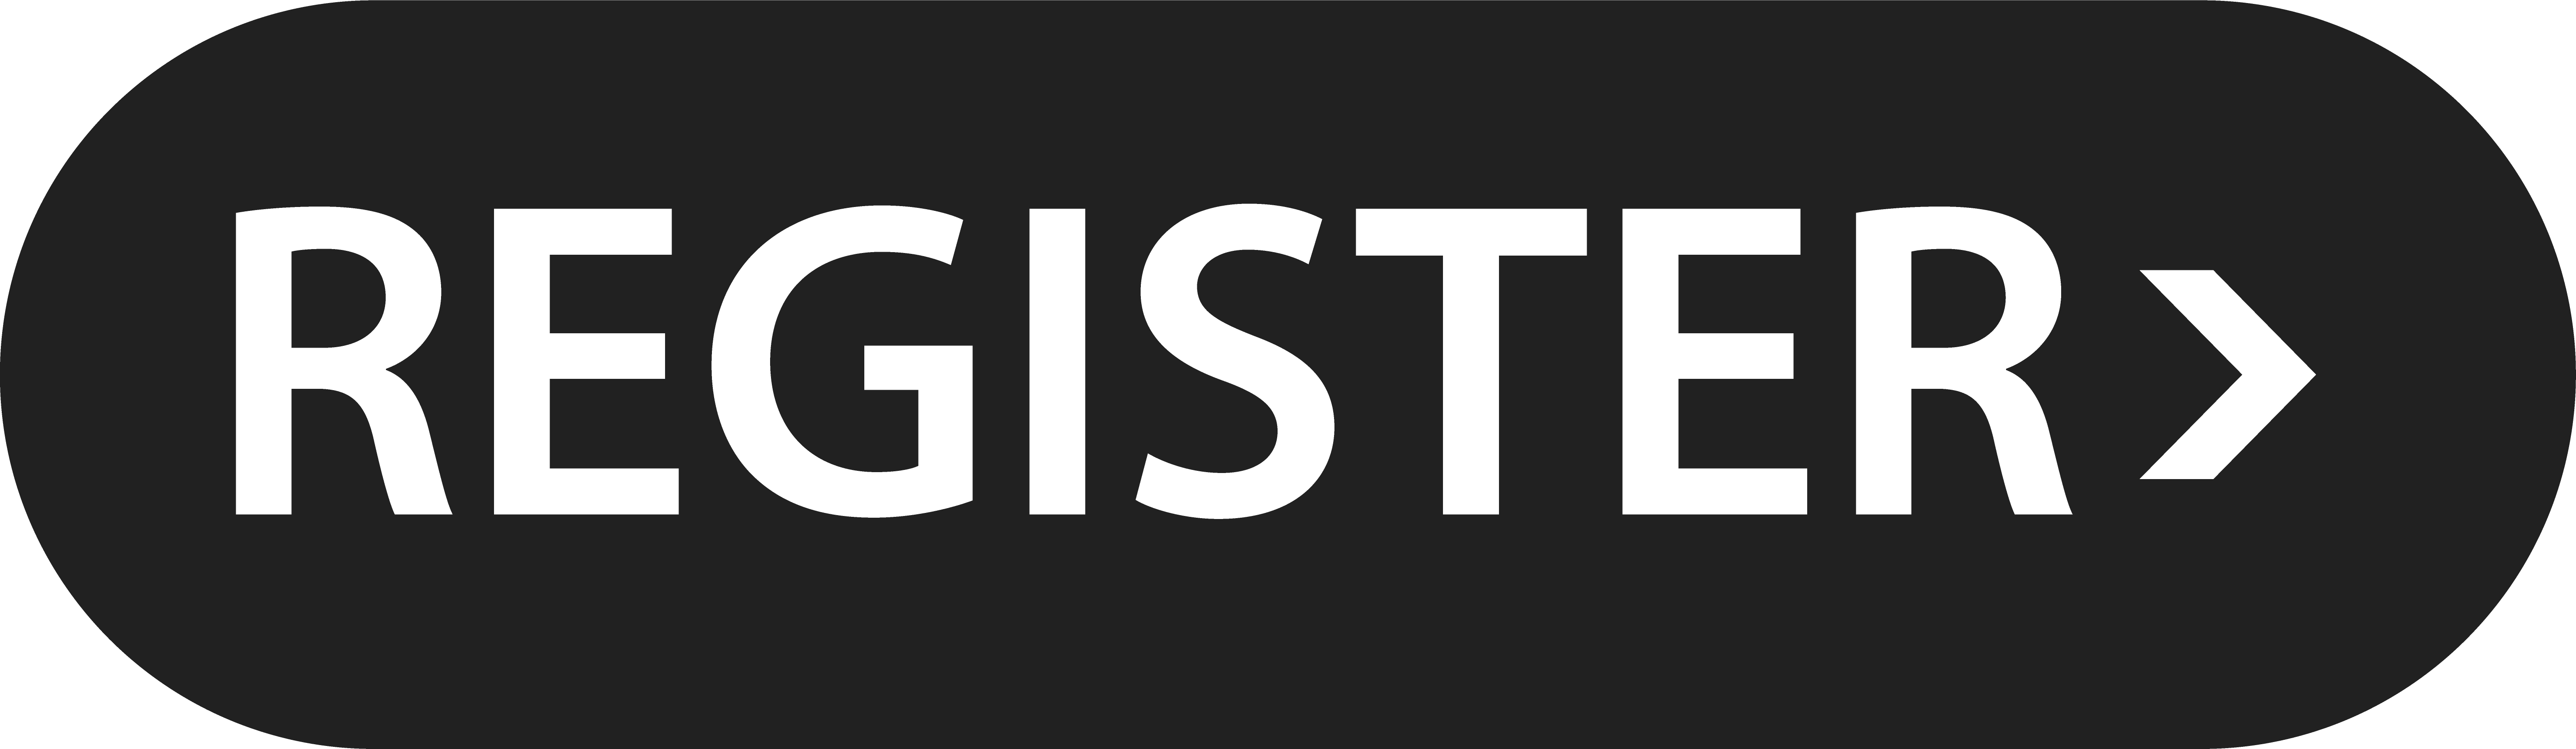 RegisterButton.png